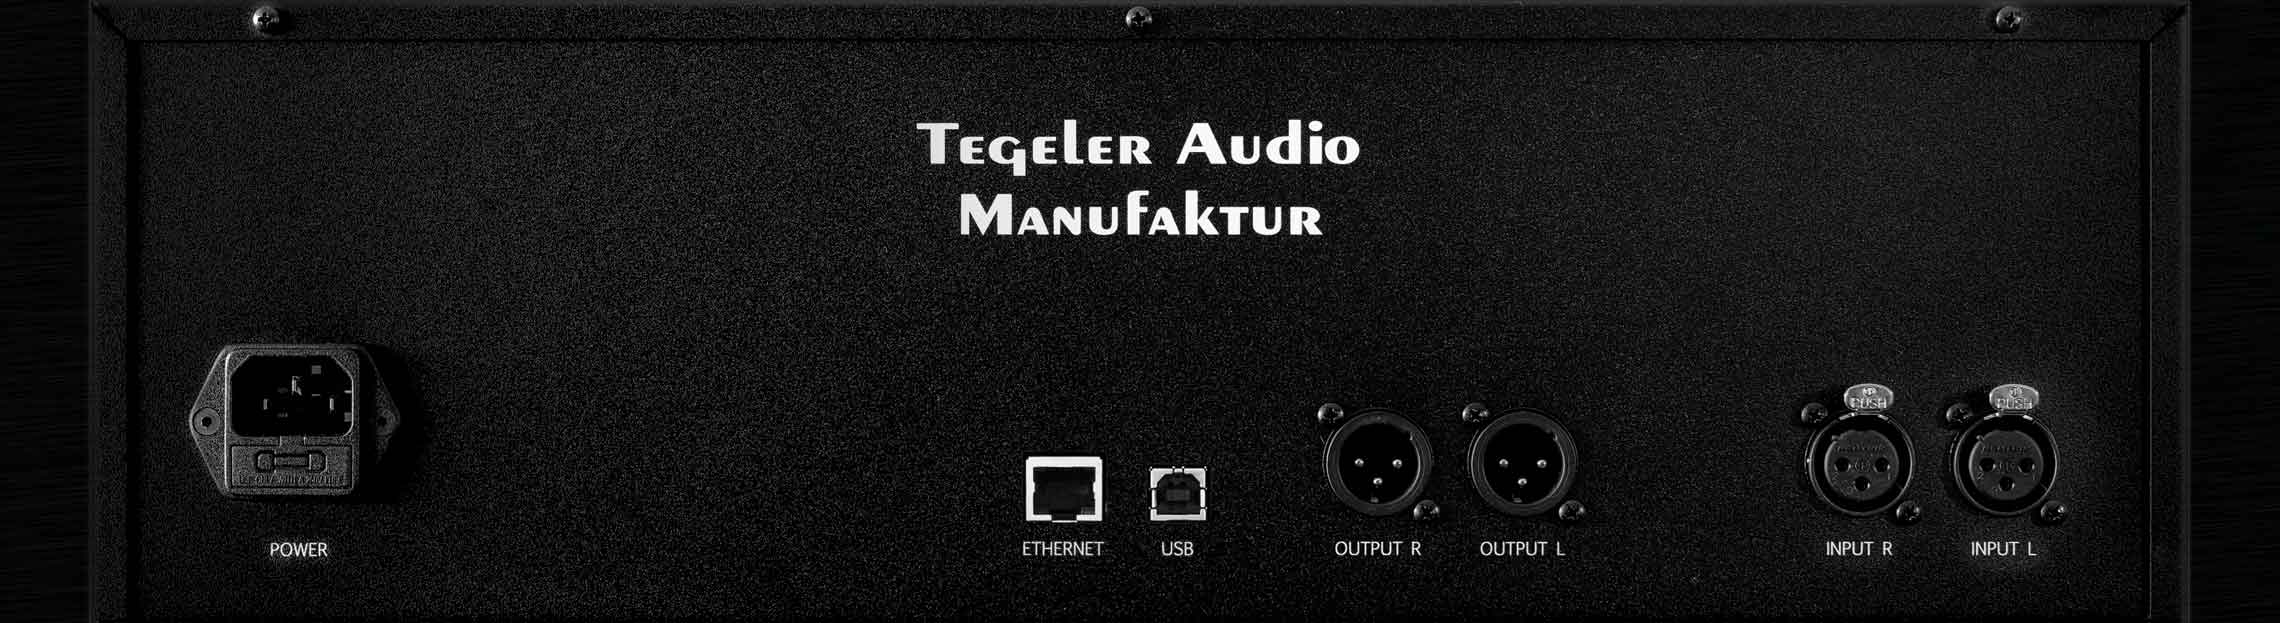 Tegeler Audio Manufaktur Schwerkraftmaschine - Effects processor - Variation 1